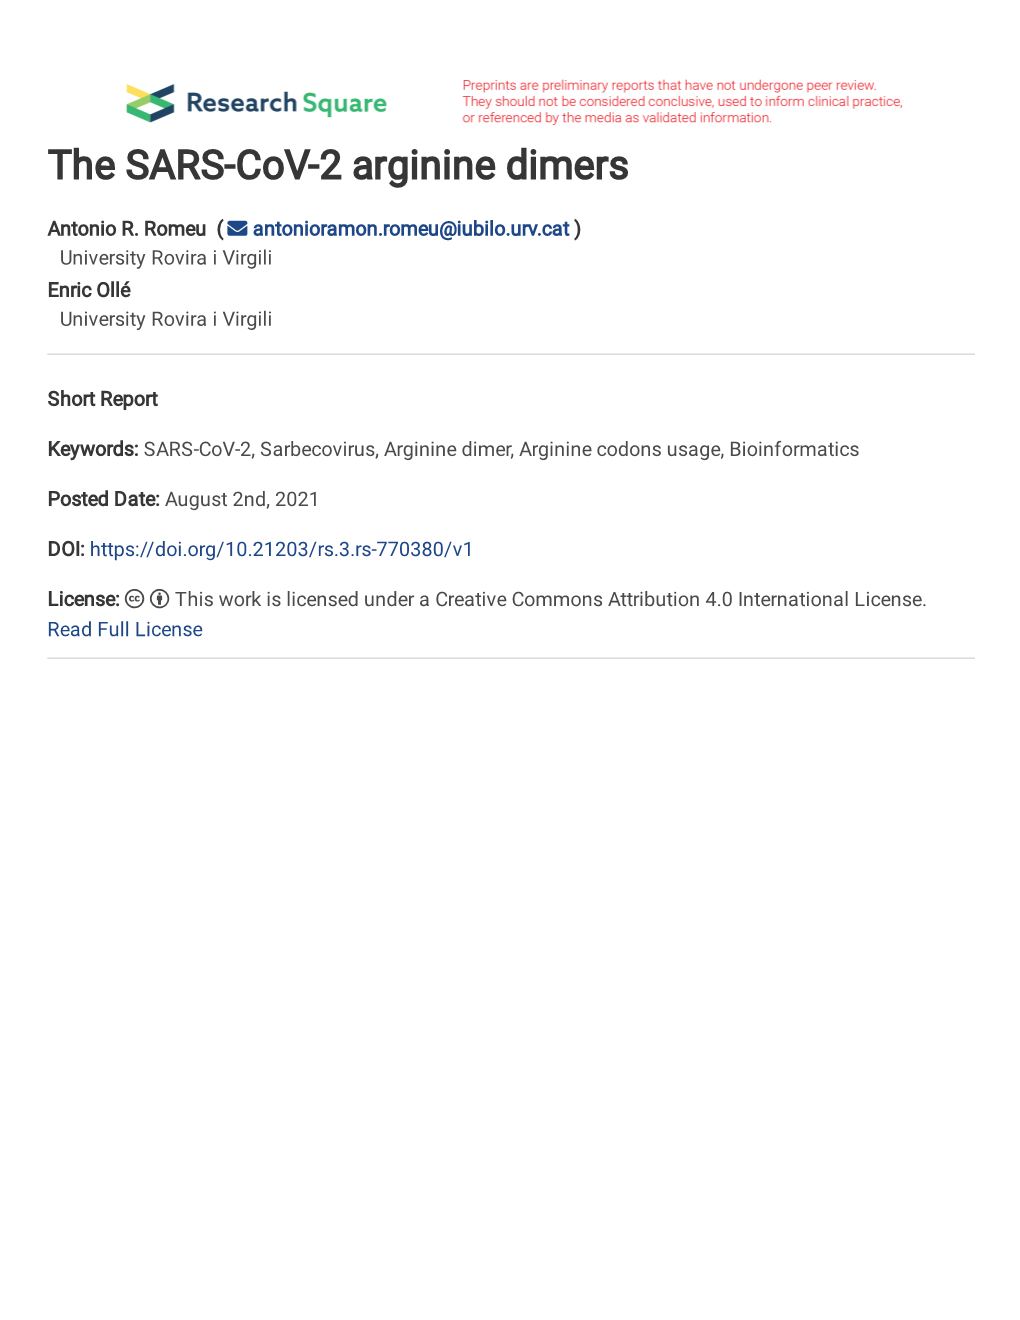 The SARS-Cov-2 Arginine Dimers